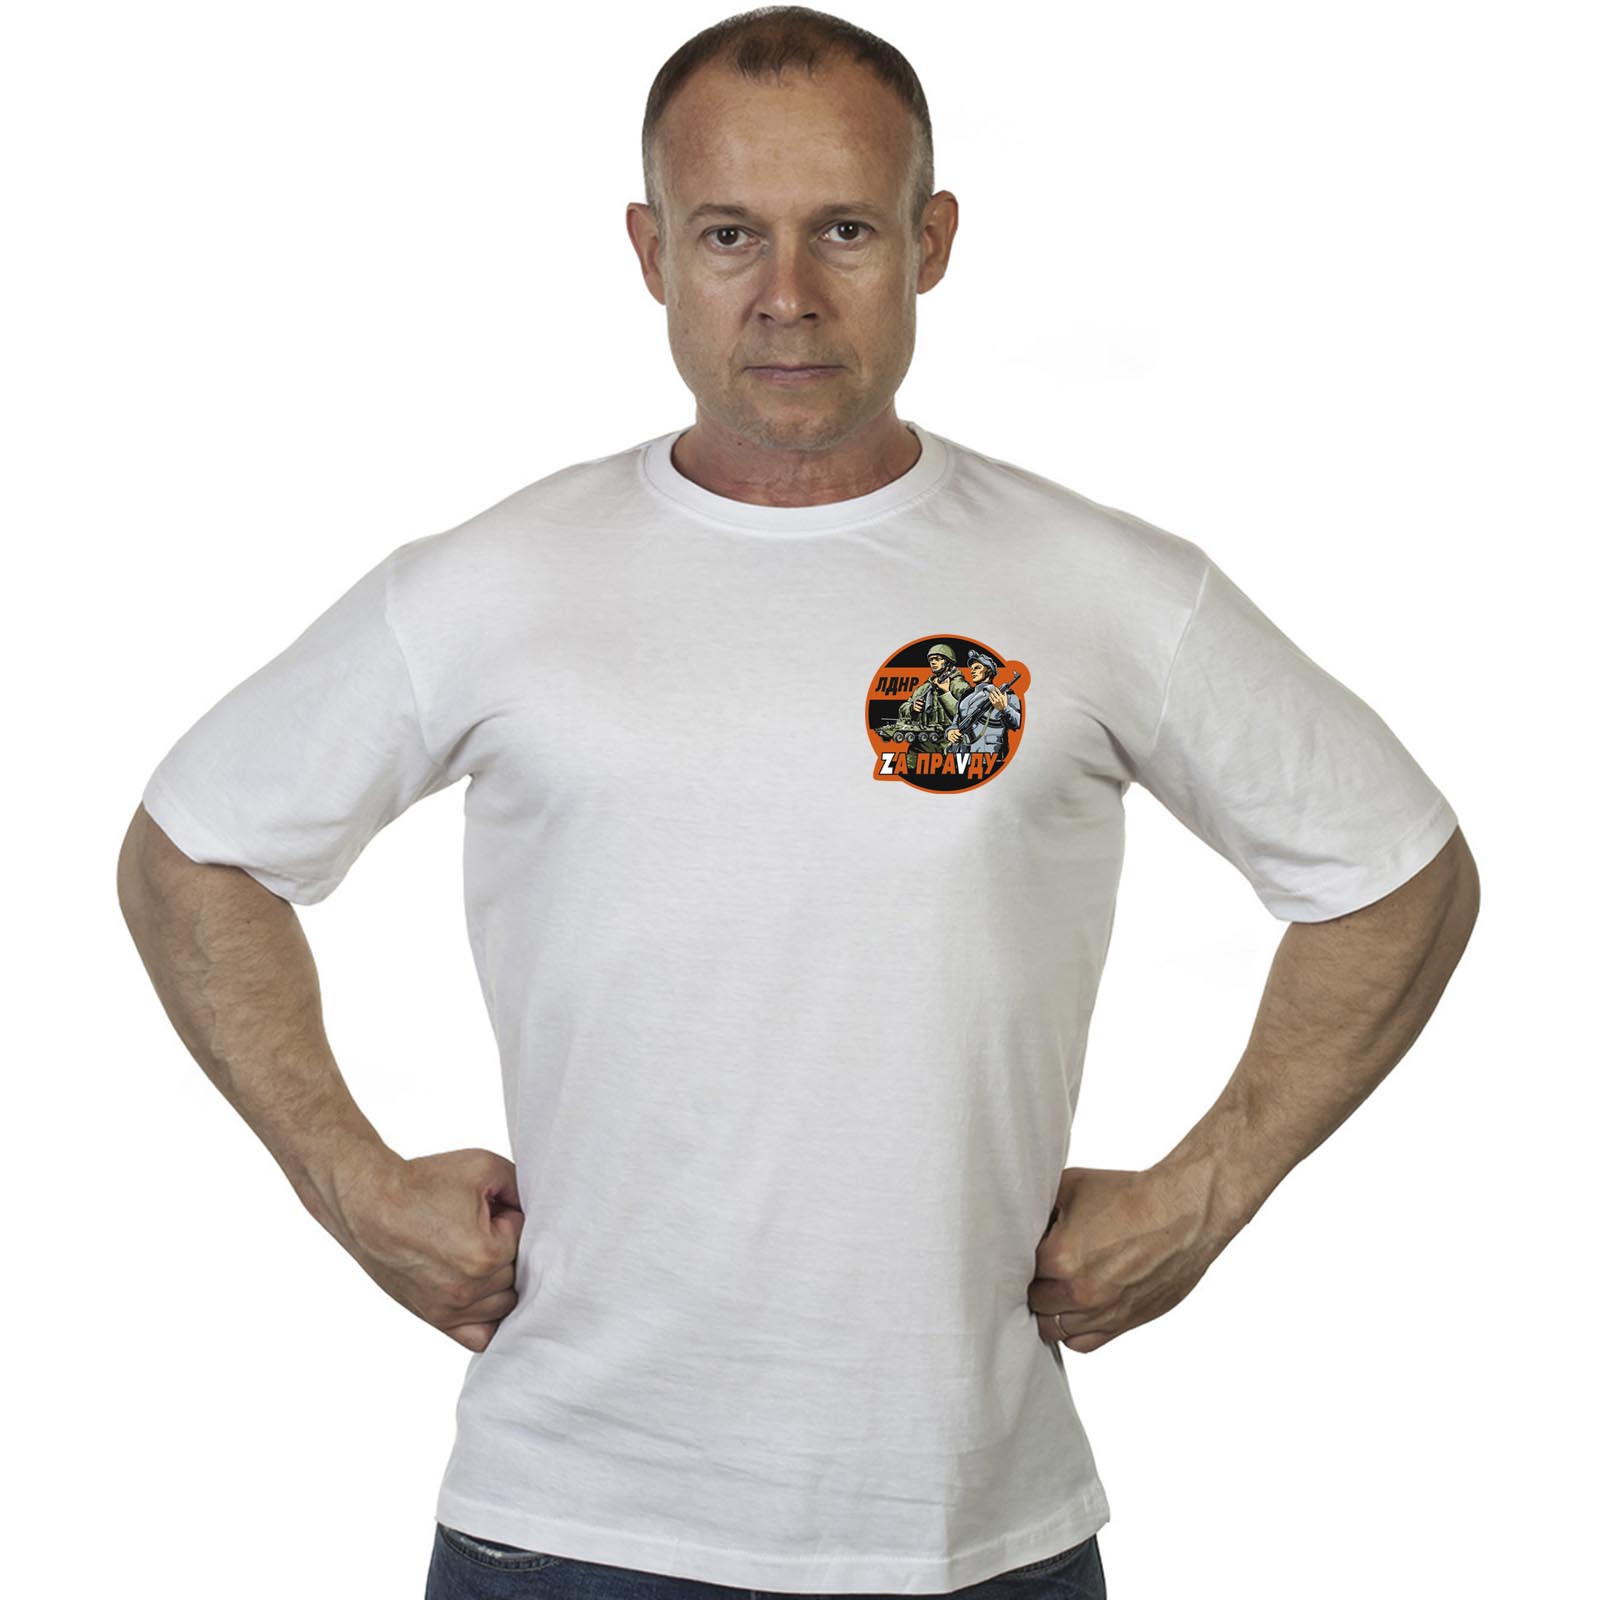 Белая футболка с трансфером ЛДНР "Zа праVду"